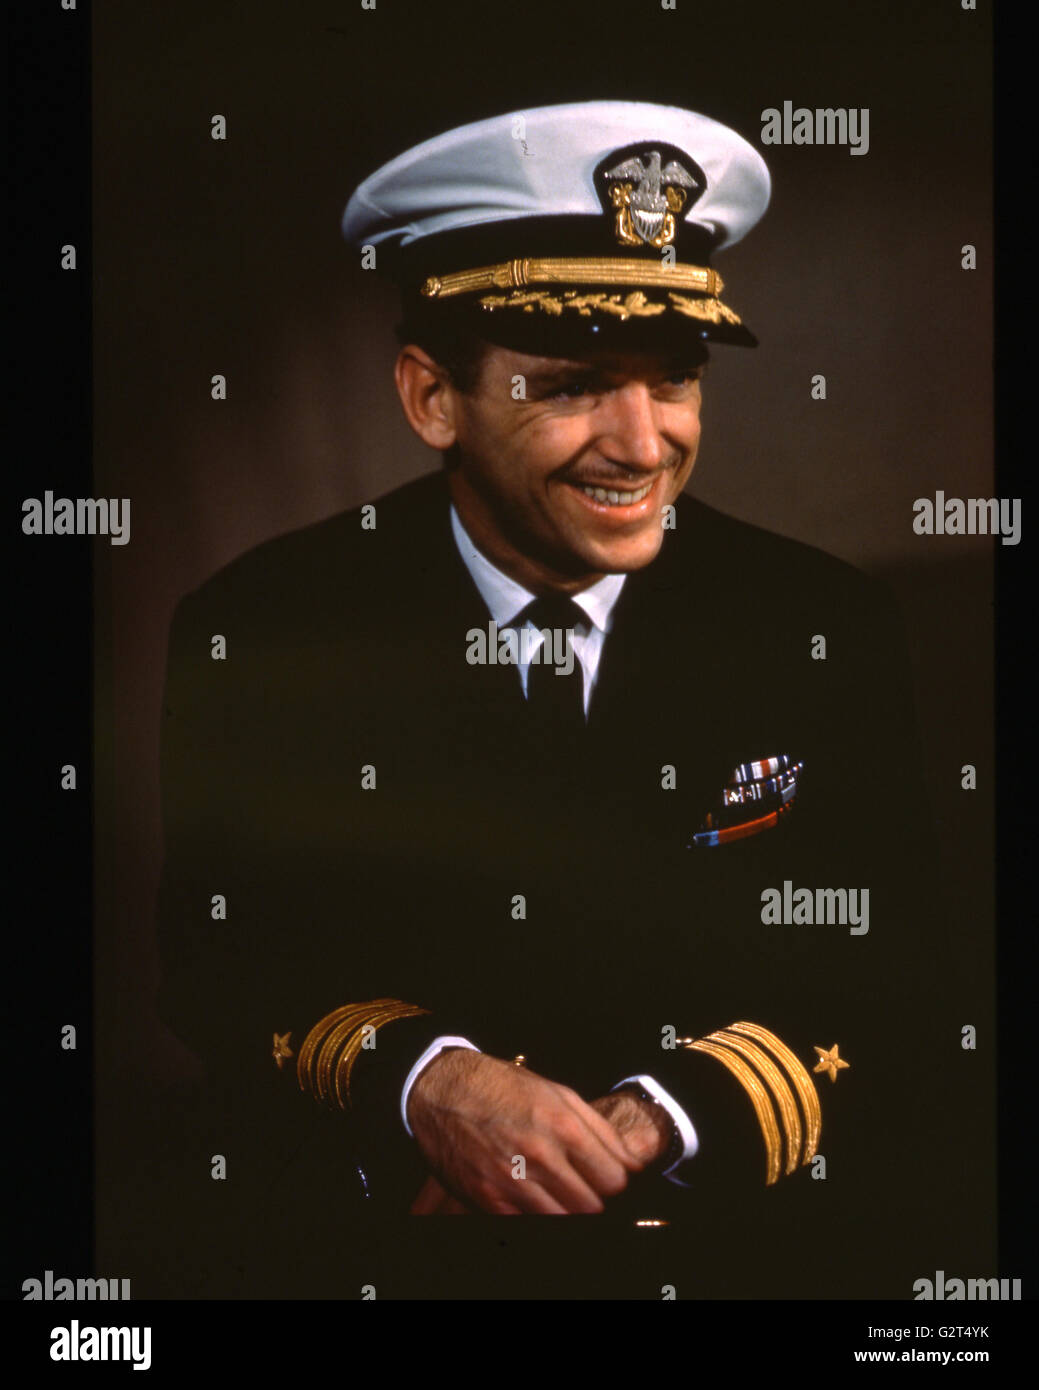 La Seconde Guerre mondiale, commandant de la Marine photo de Douglas Fairbanks, Jr., acteur et héros de guerre décoré. Banque D'Images